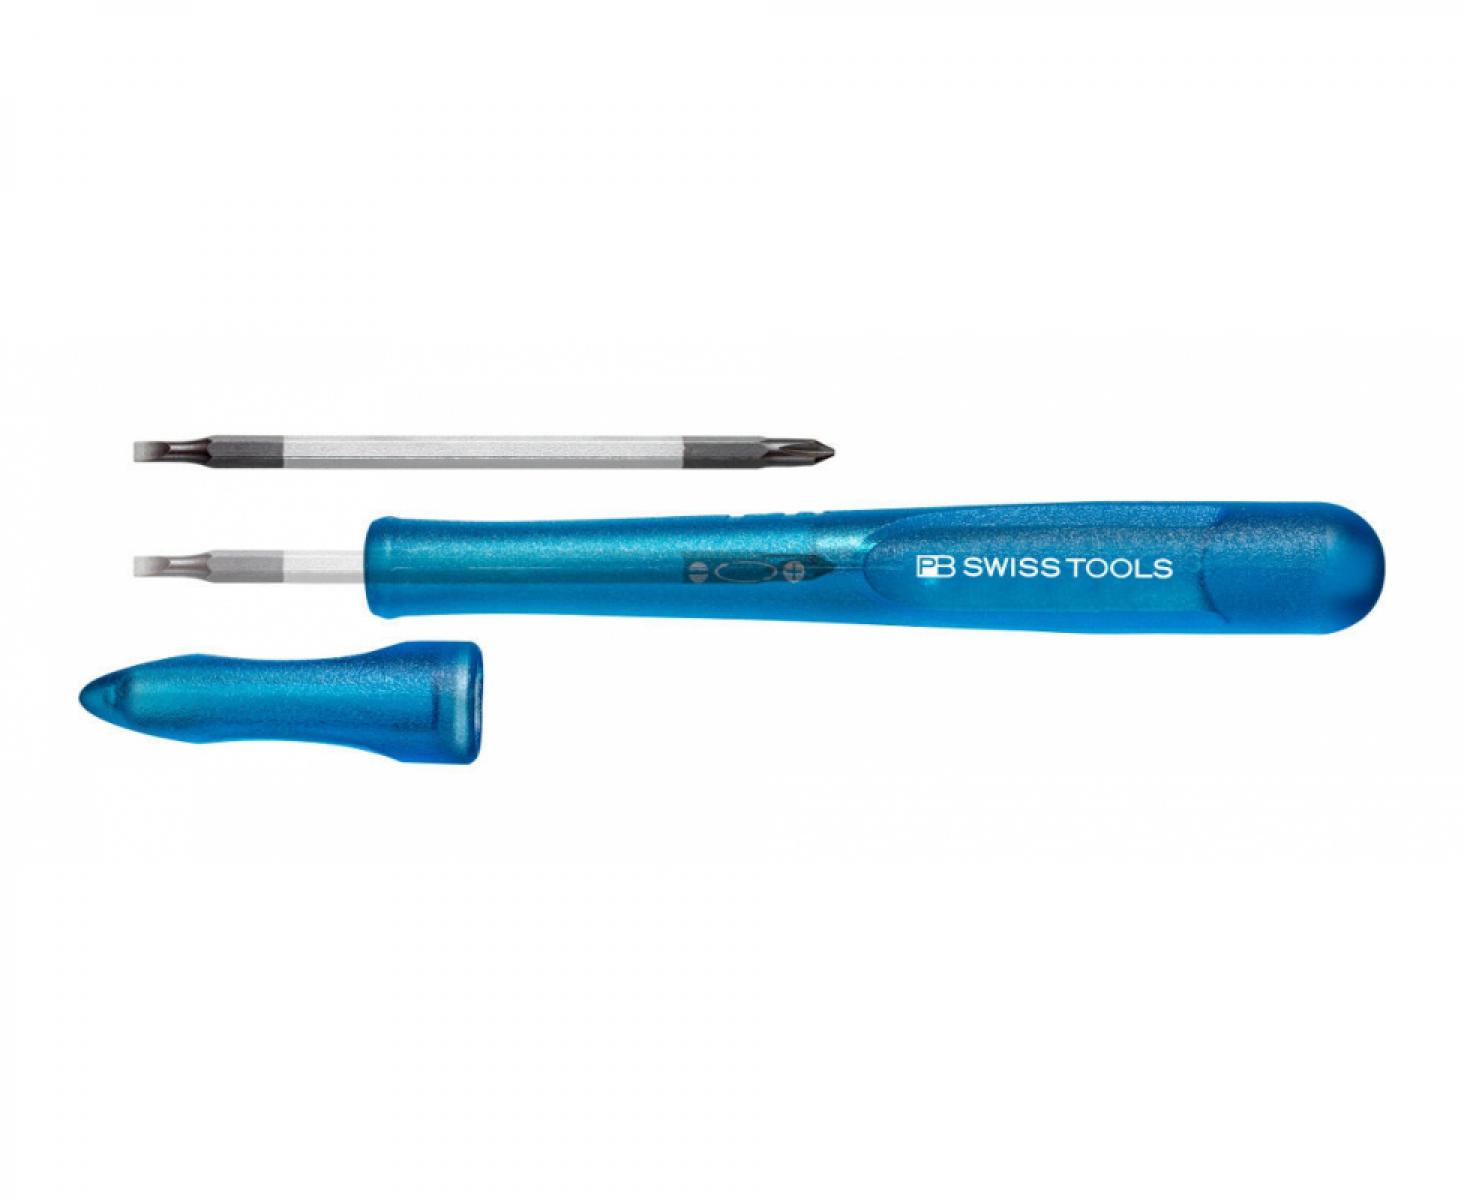 Отвертка прецизионная прецизионная PB Swiss Tools со сменным жалом SL PH PB 168.00-30 BL синяя